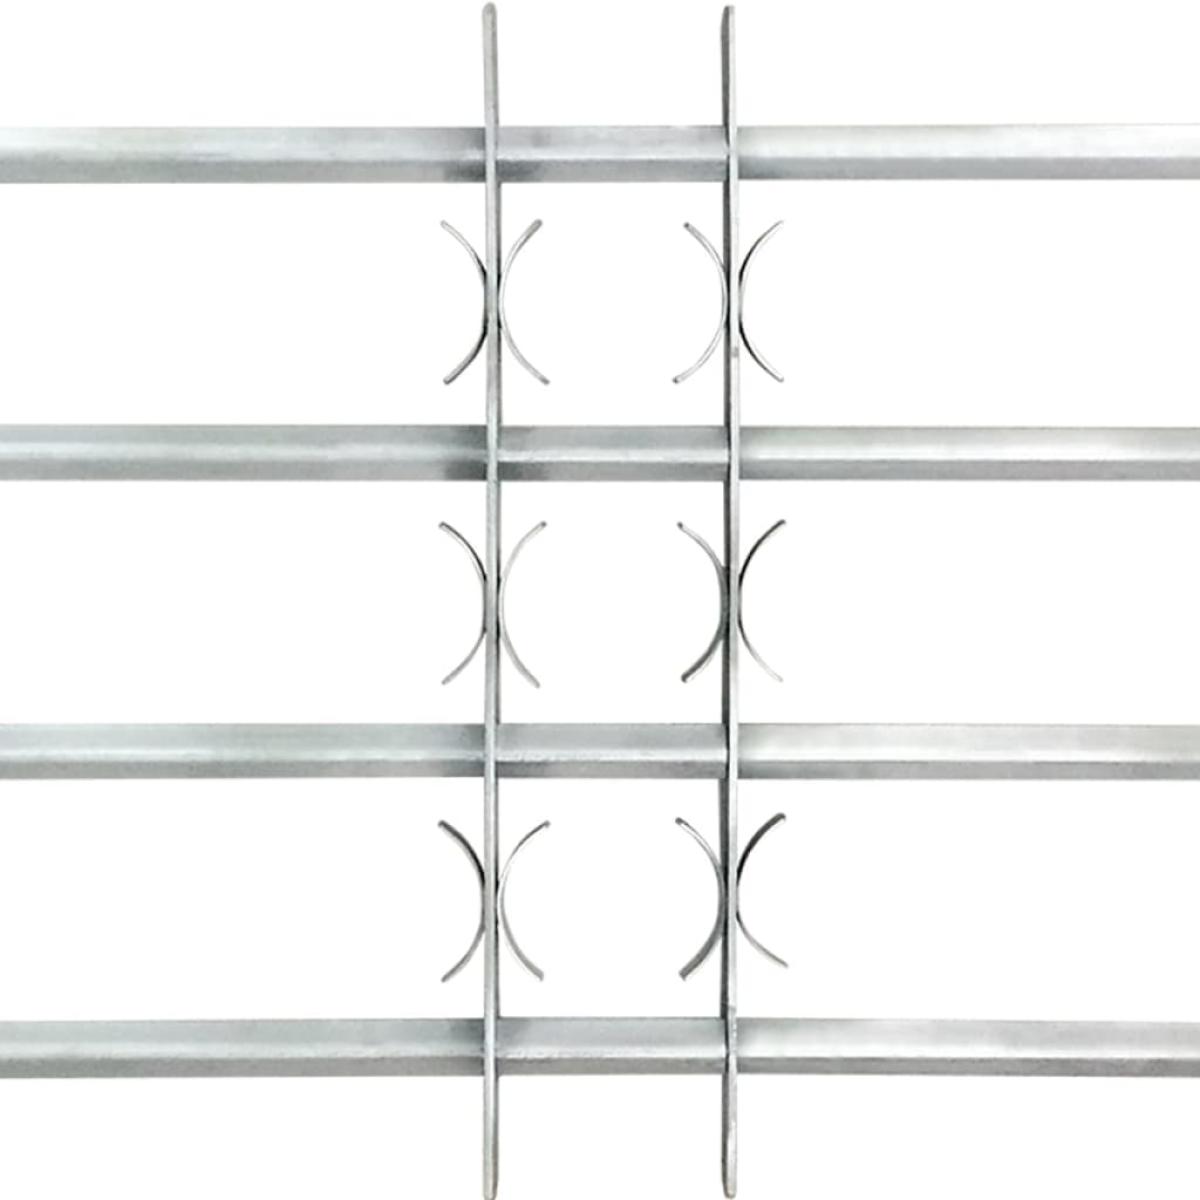 Reja de seguridad ajustable ventana con 4 barras 500-650 mm